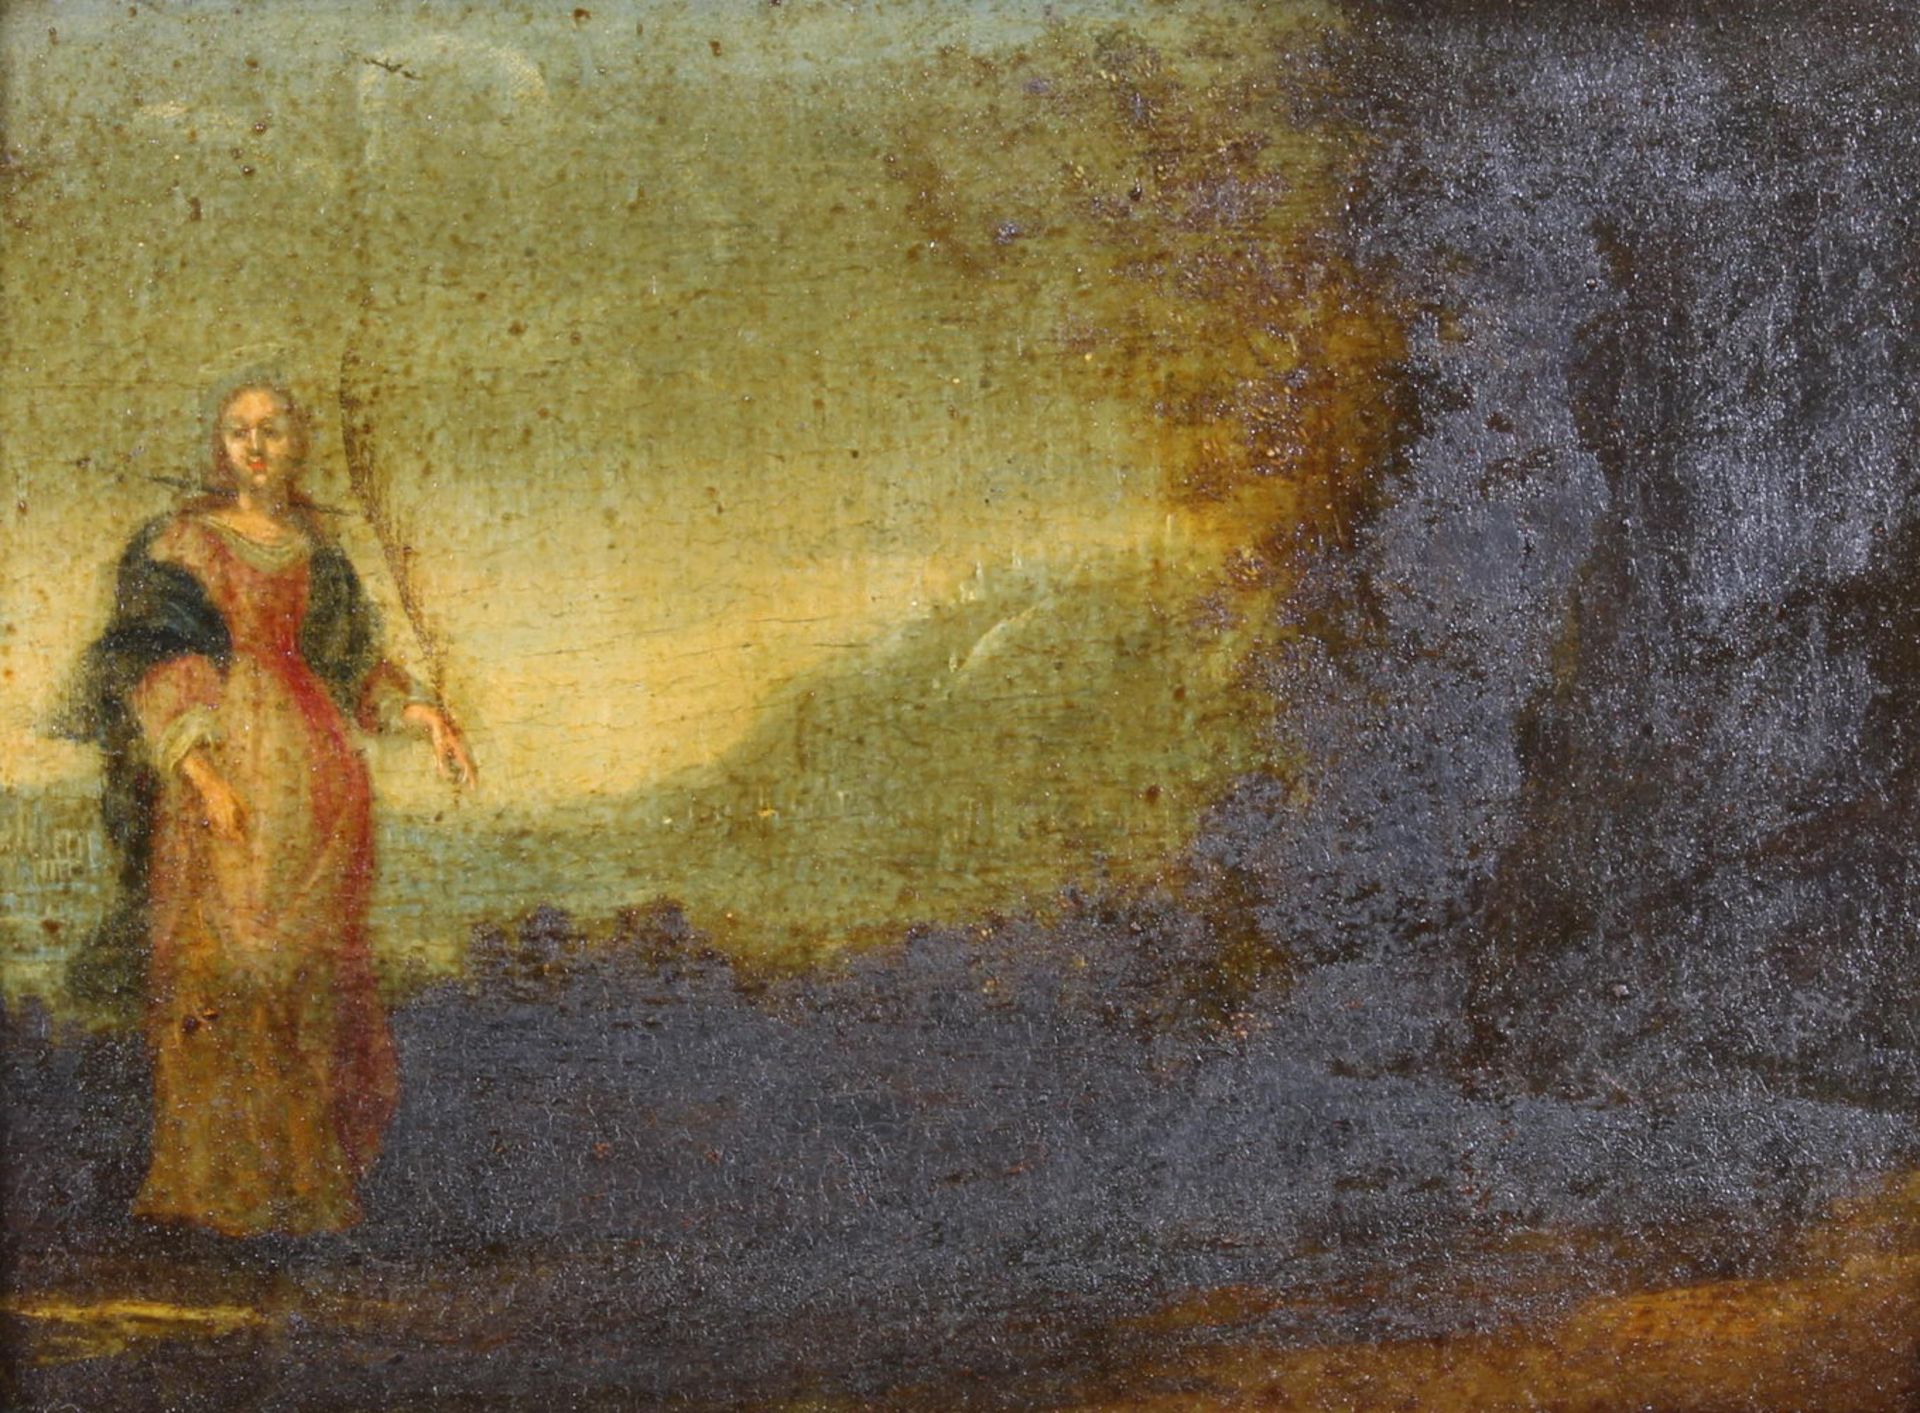 Sakralmaler (16./17. Jh.), "Heilige mit Palmzweig in Landschaft", Öl auf Holz, 19.5 x 25 cm, stark